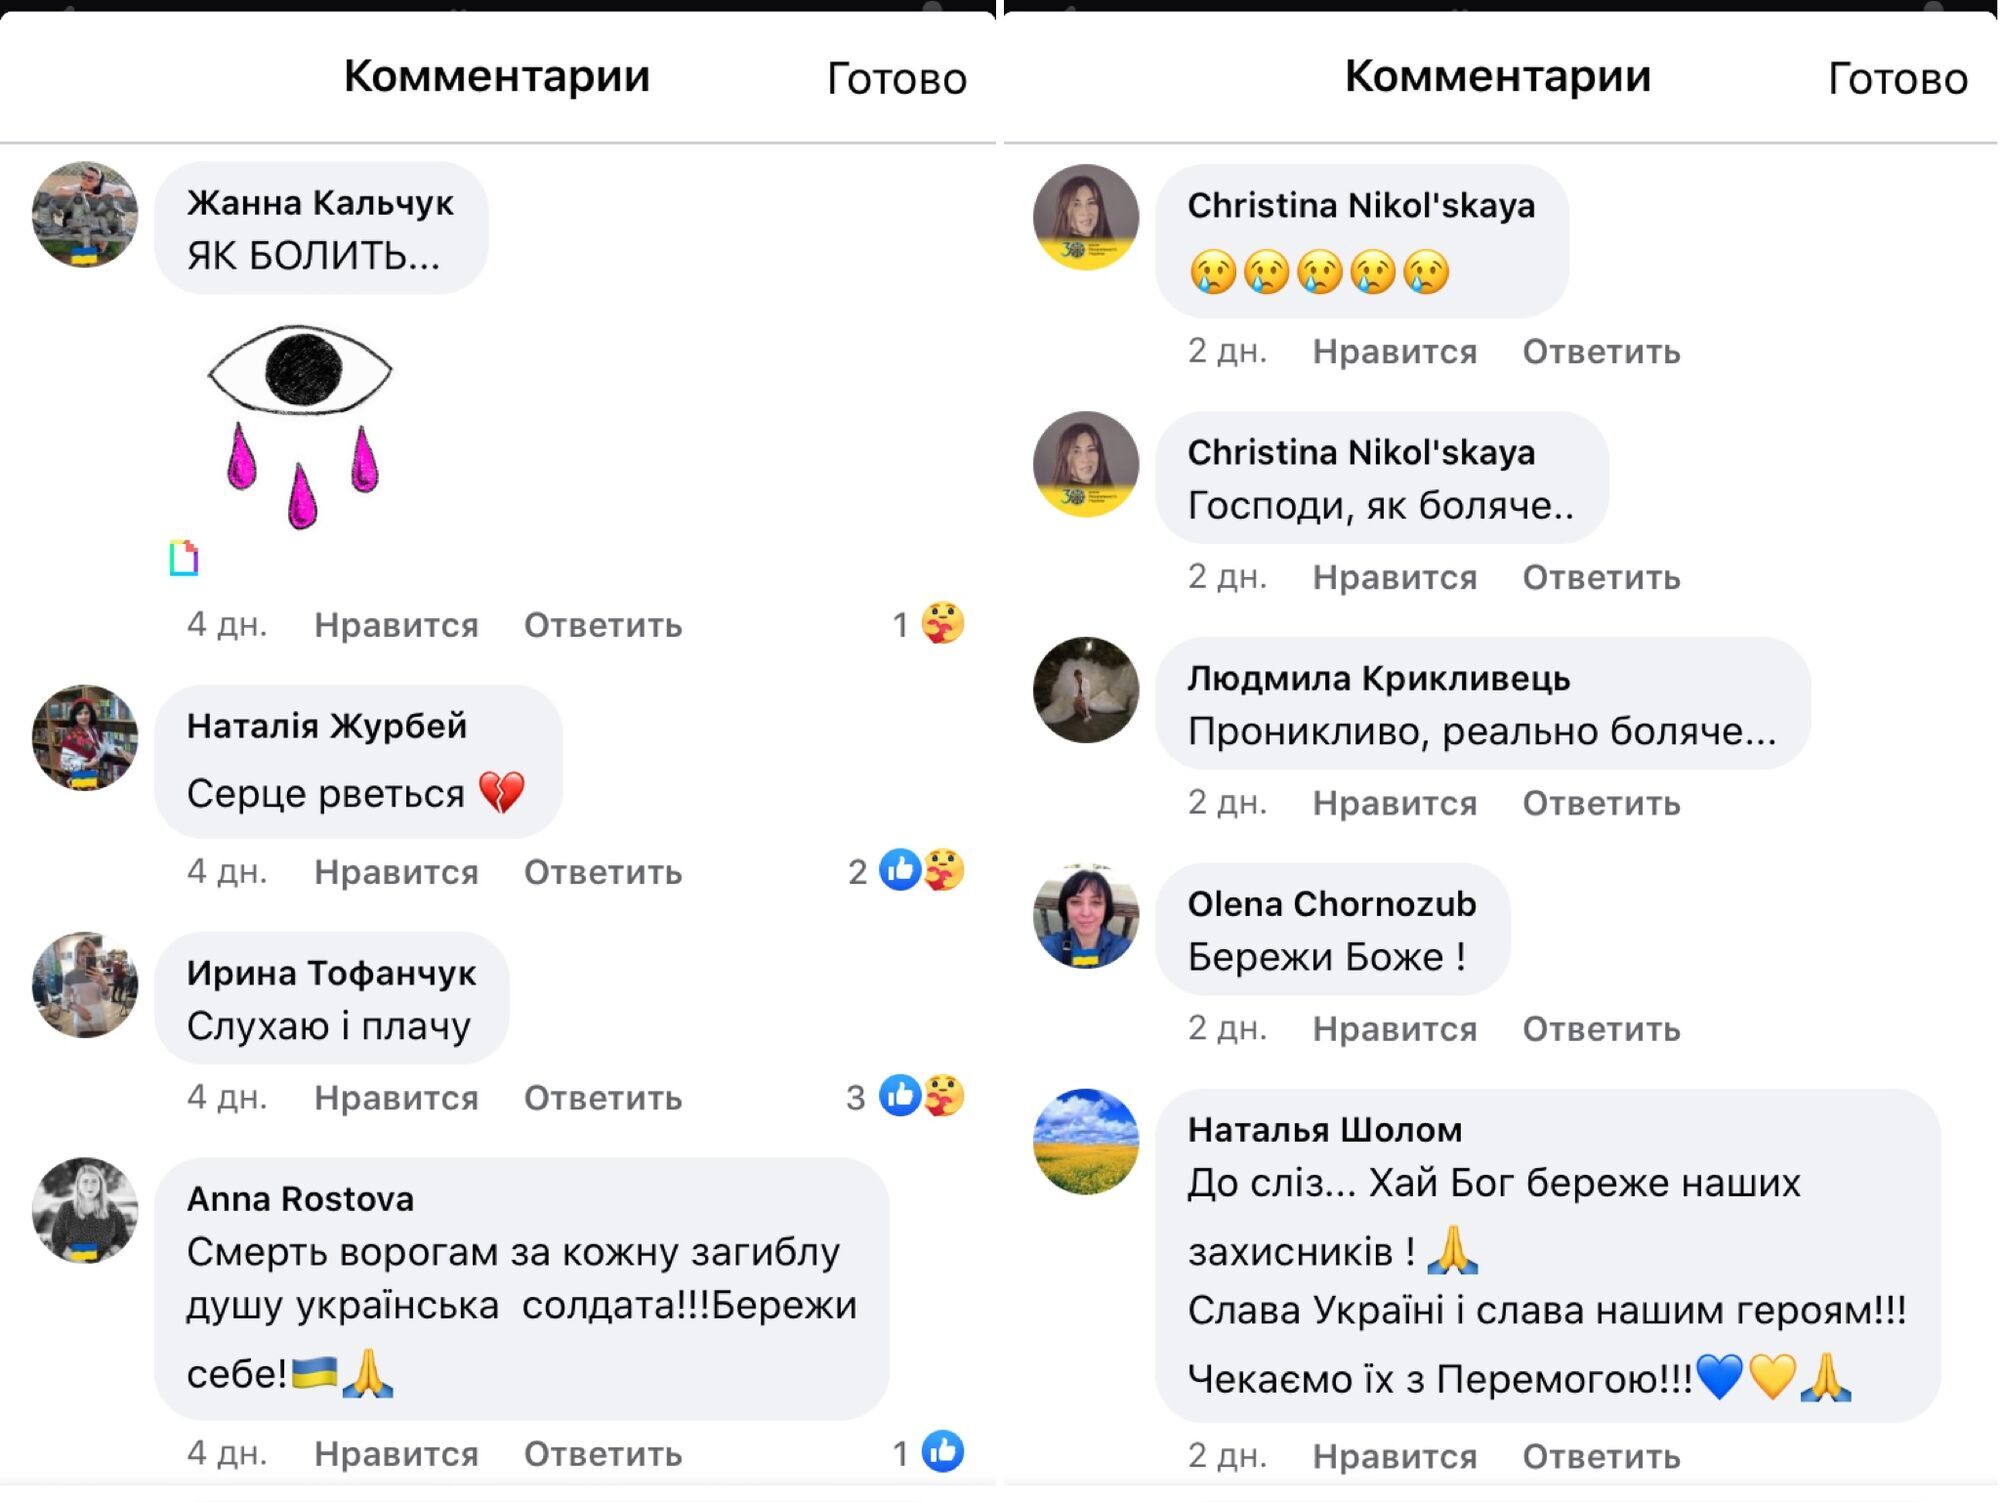 "Мамо, я убитий в Ірпені": вірш-звернення захисника України зворушив мережу до сліз